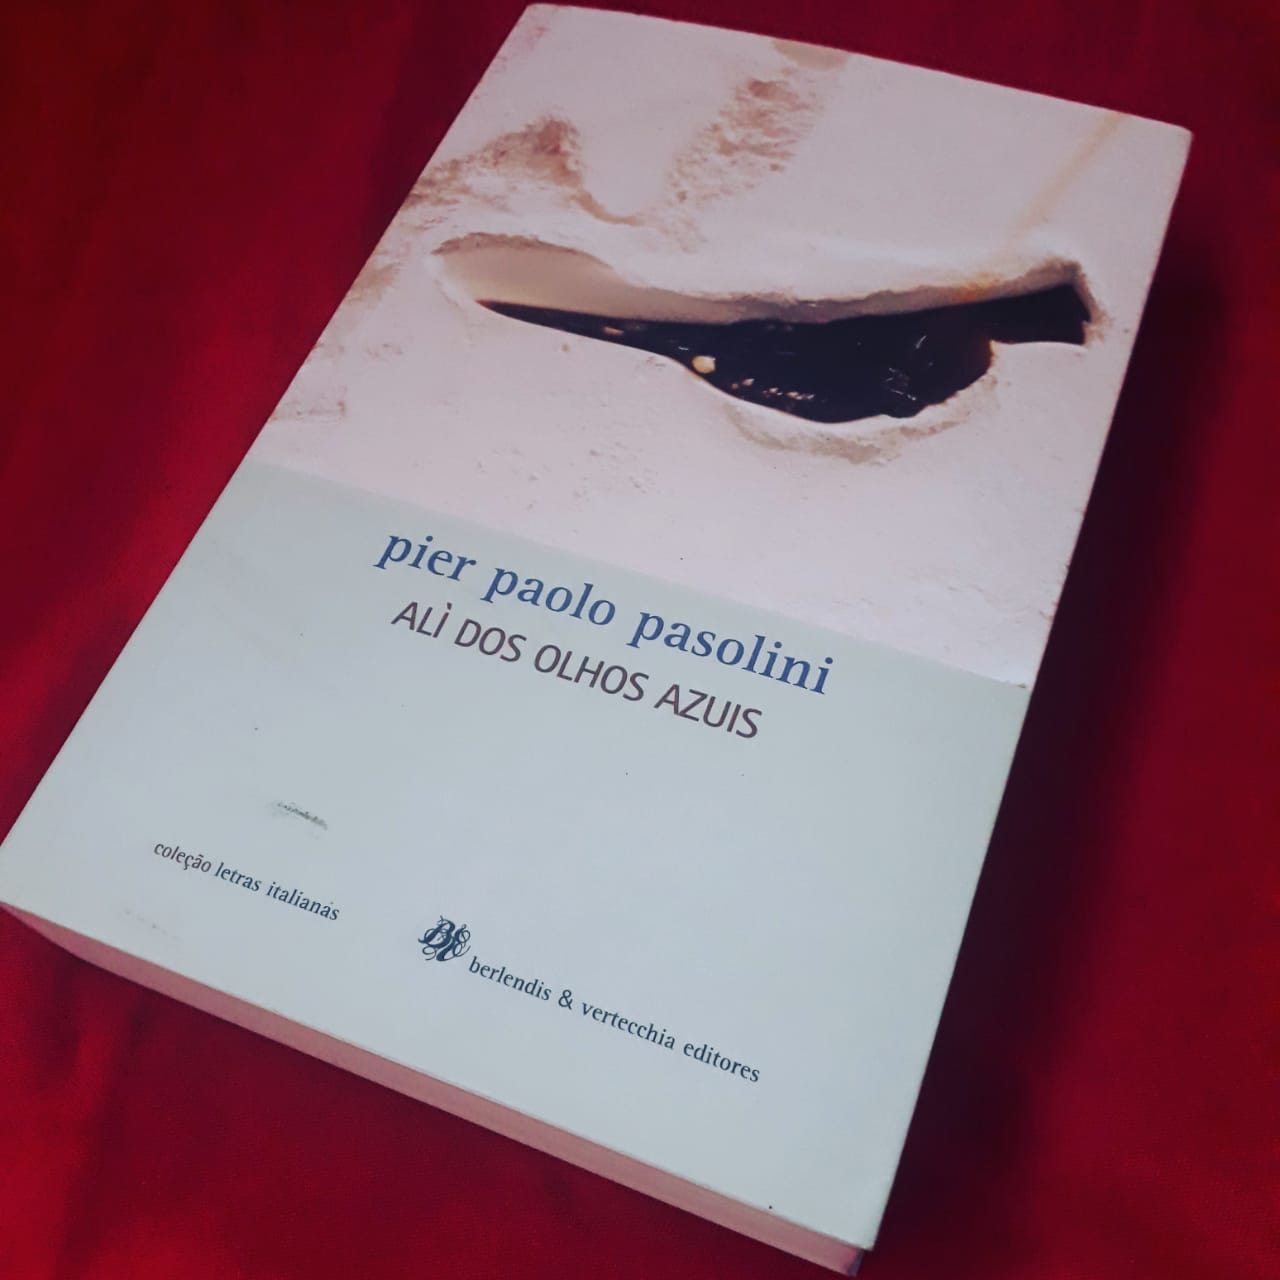 Um livro do Pasolini